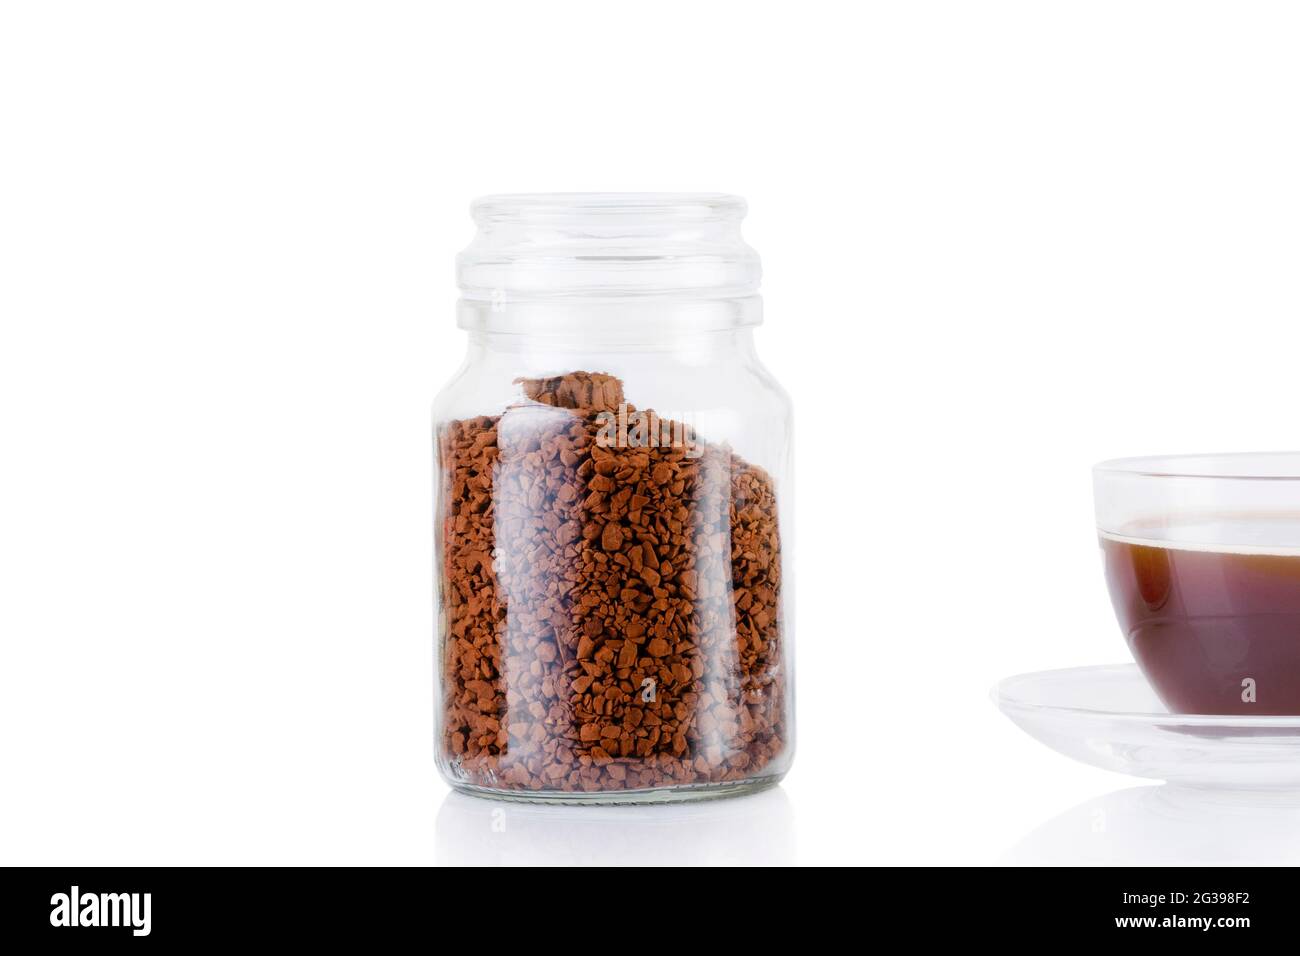 Une boisson à base de café est versée dans la tasse. Un café délicieux et  aromatique est versé dans une tasse, à côté il y a un pot de grains de café